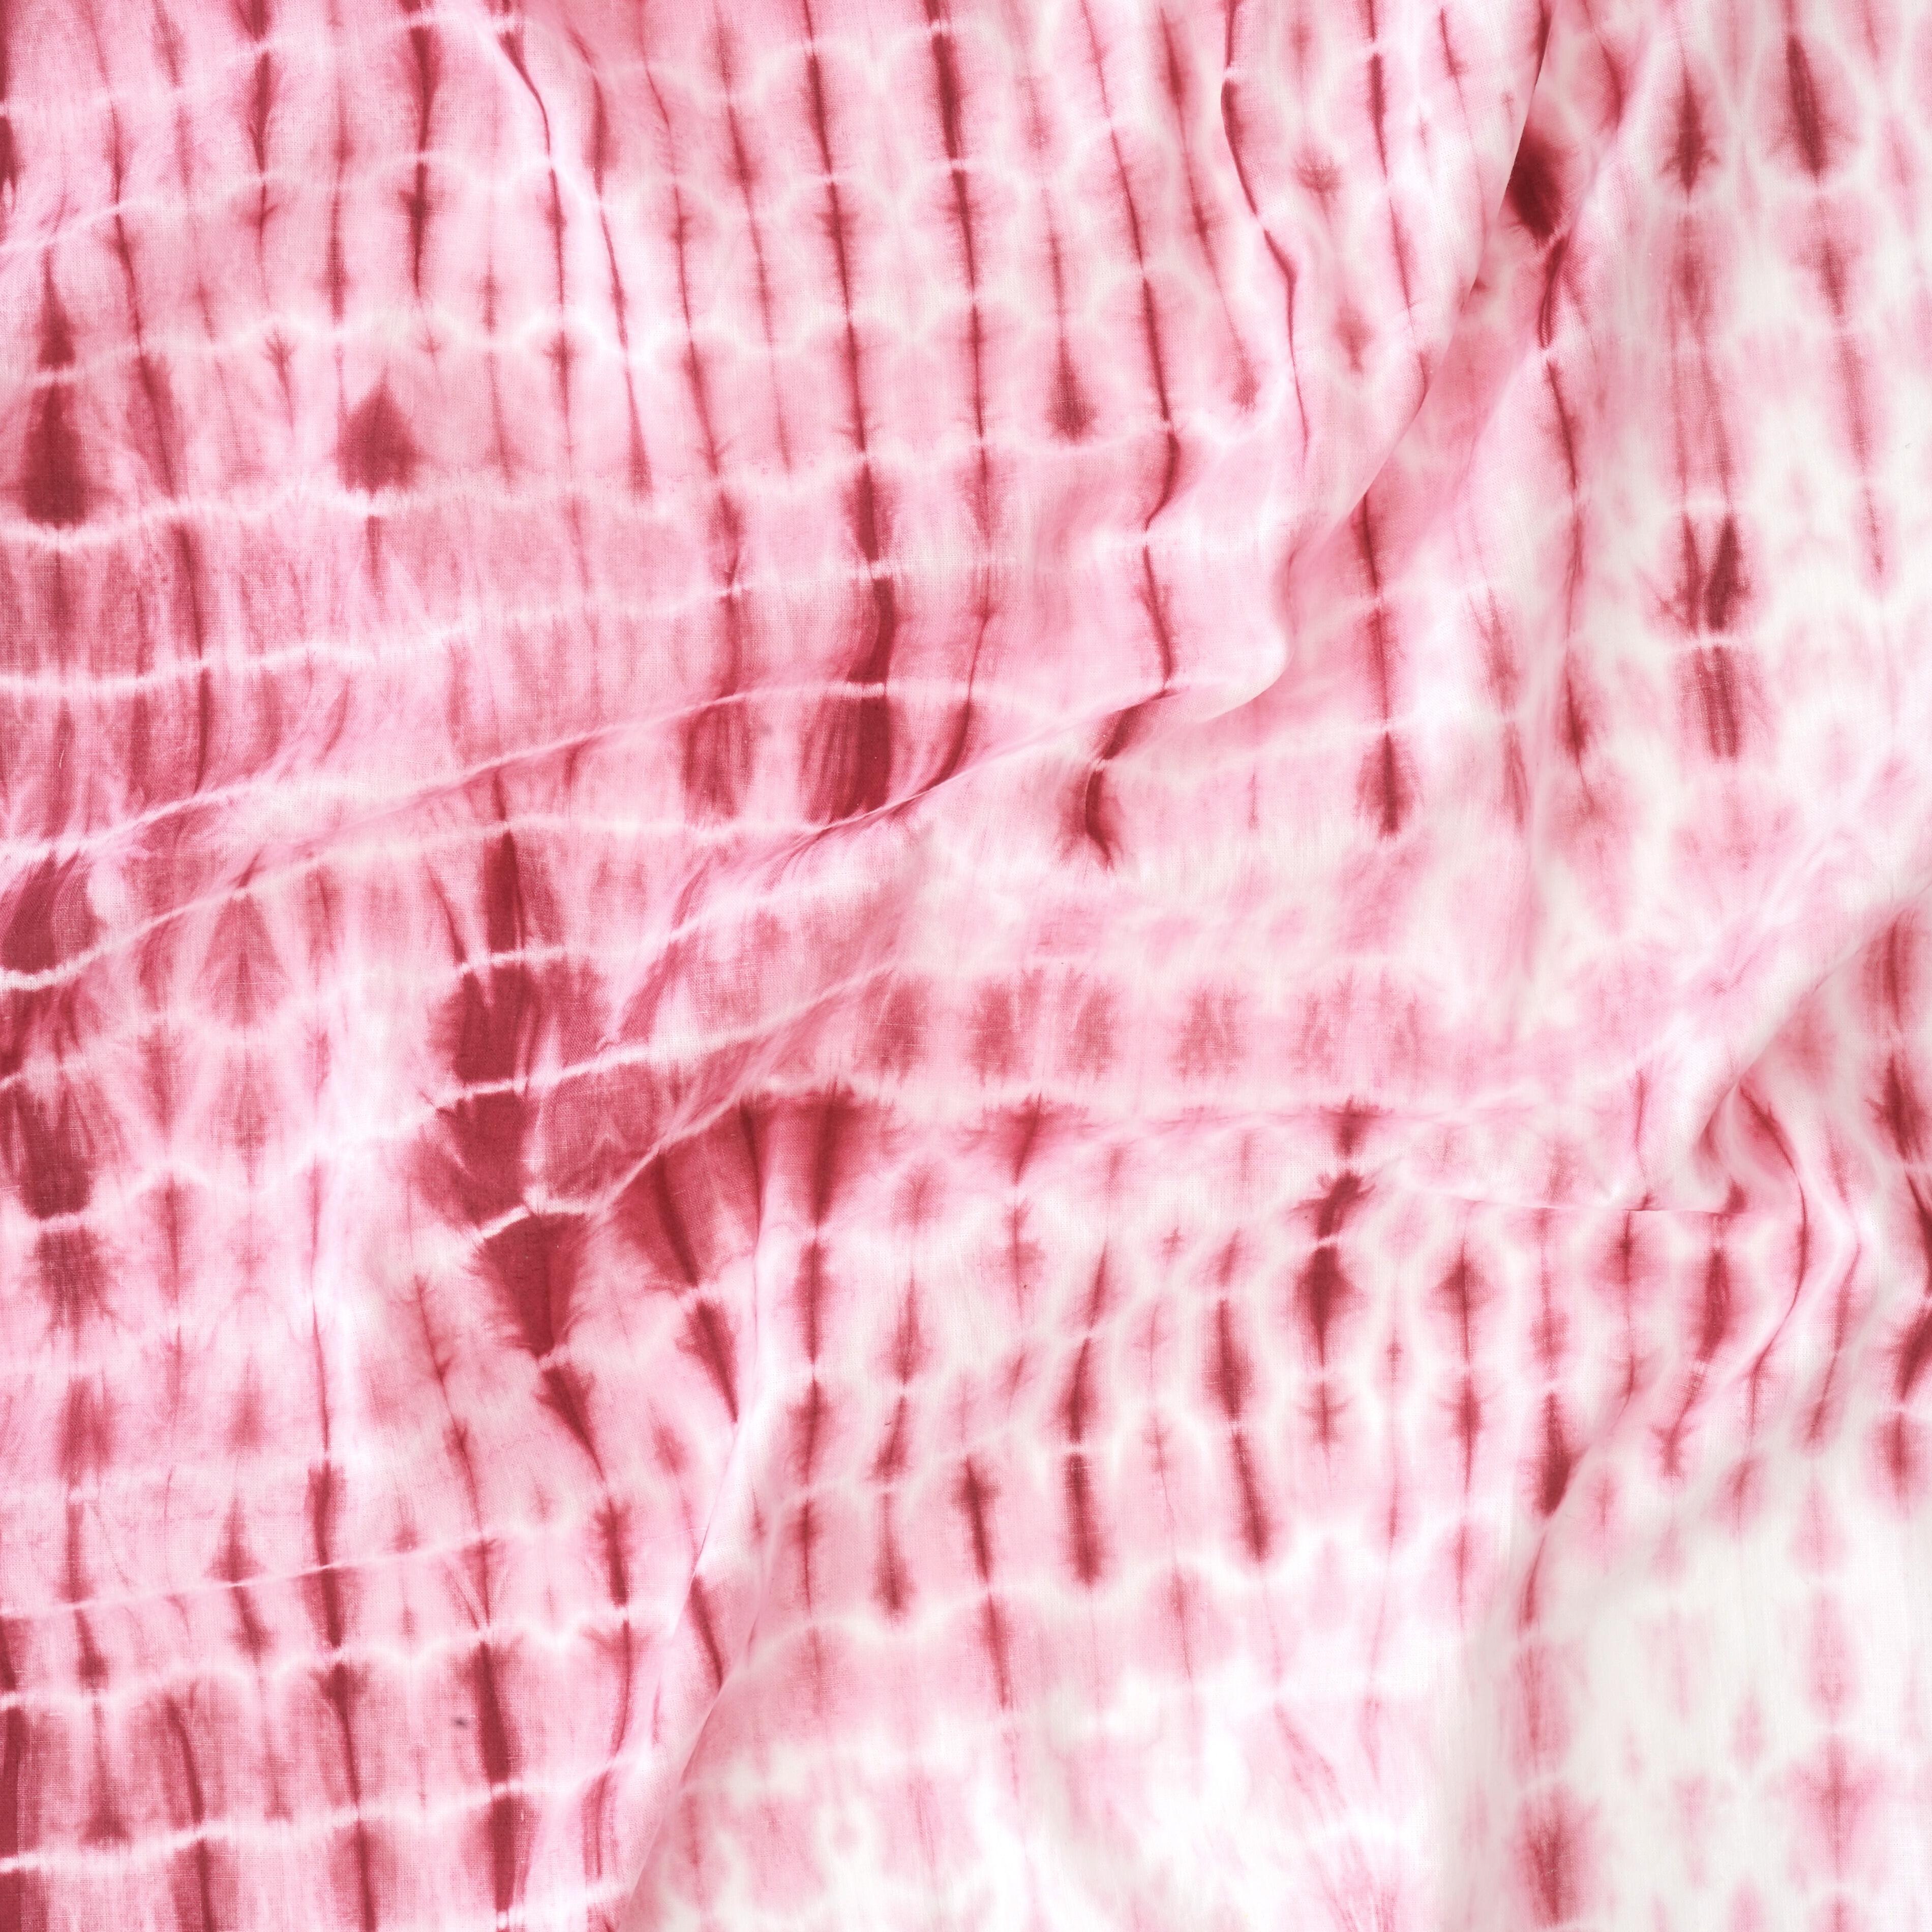 MUN04 - Tie Dye - Shibori - Cotton Cloth - Red Dye - Contrast